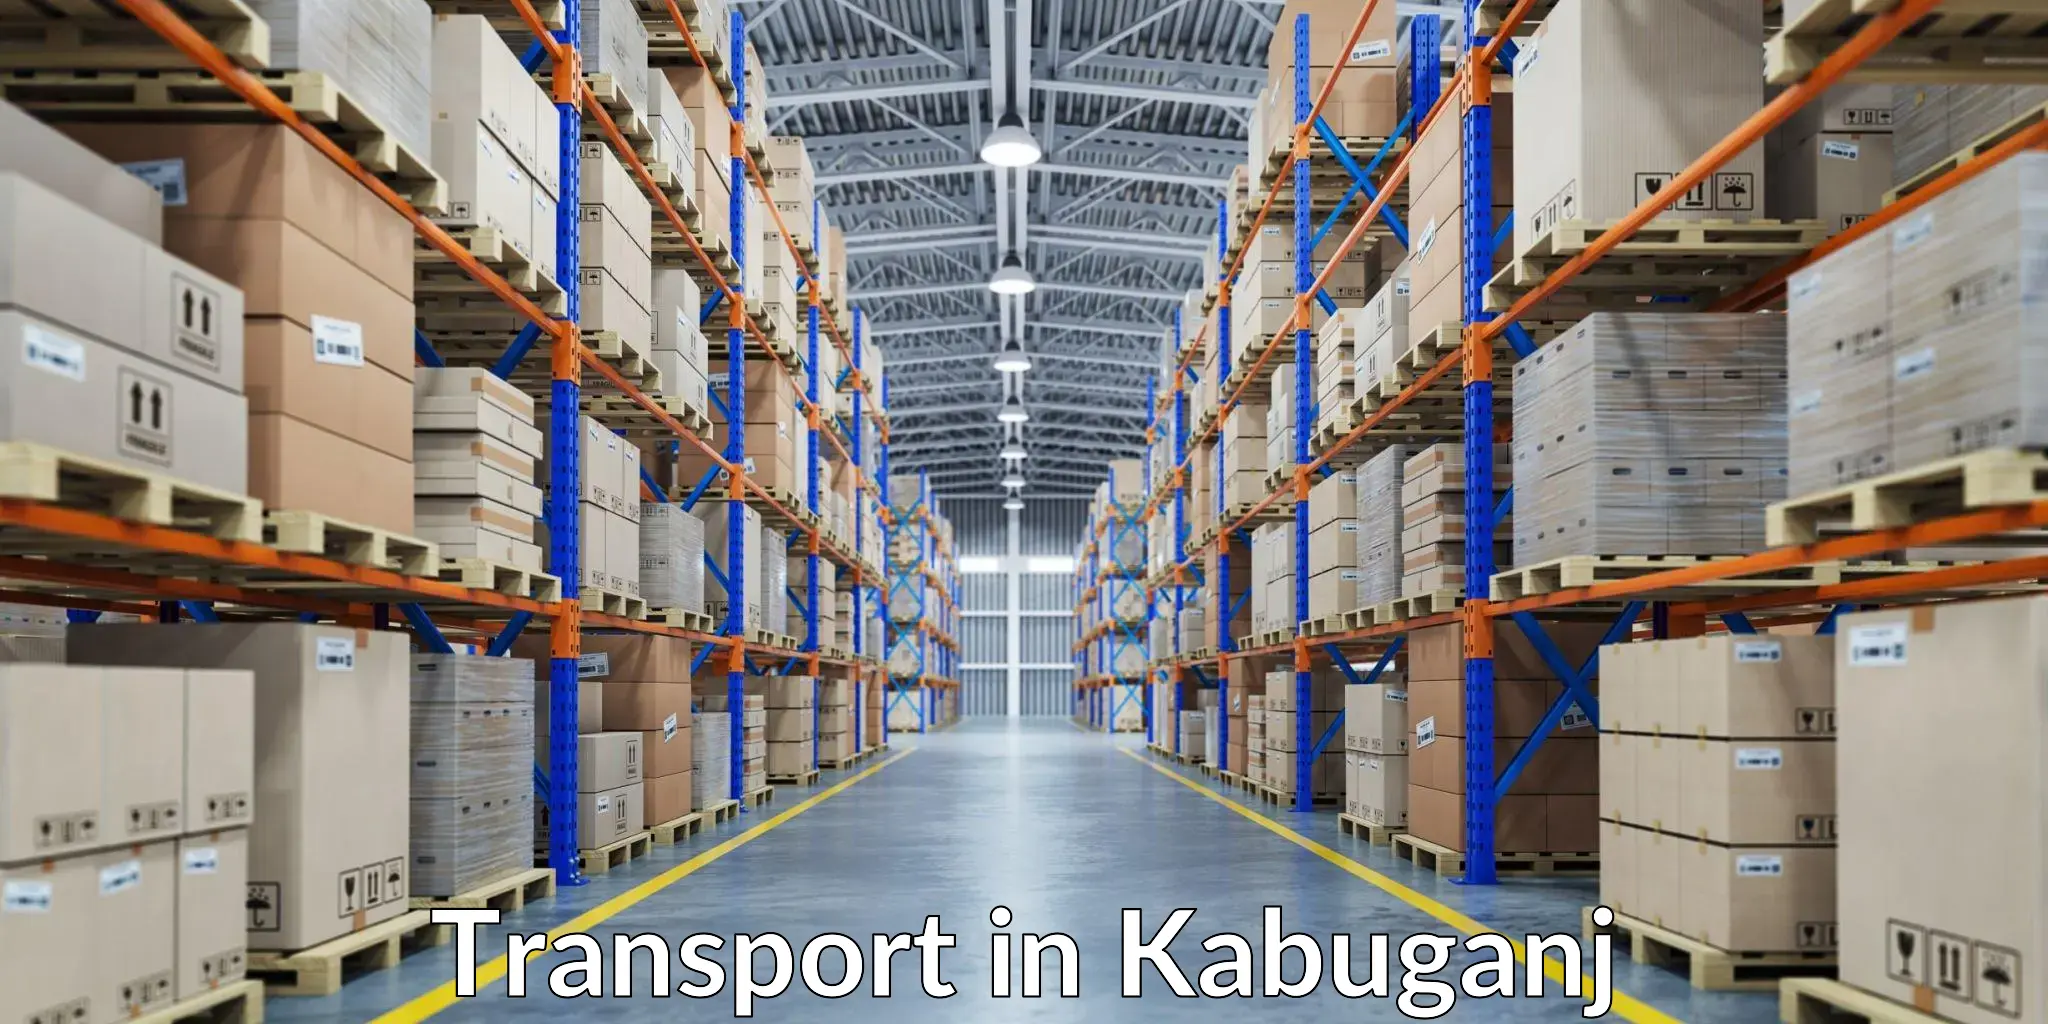 Land transport services in Kabuganj